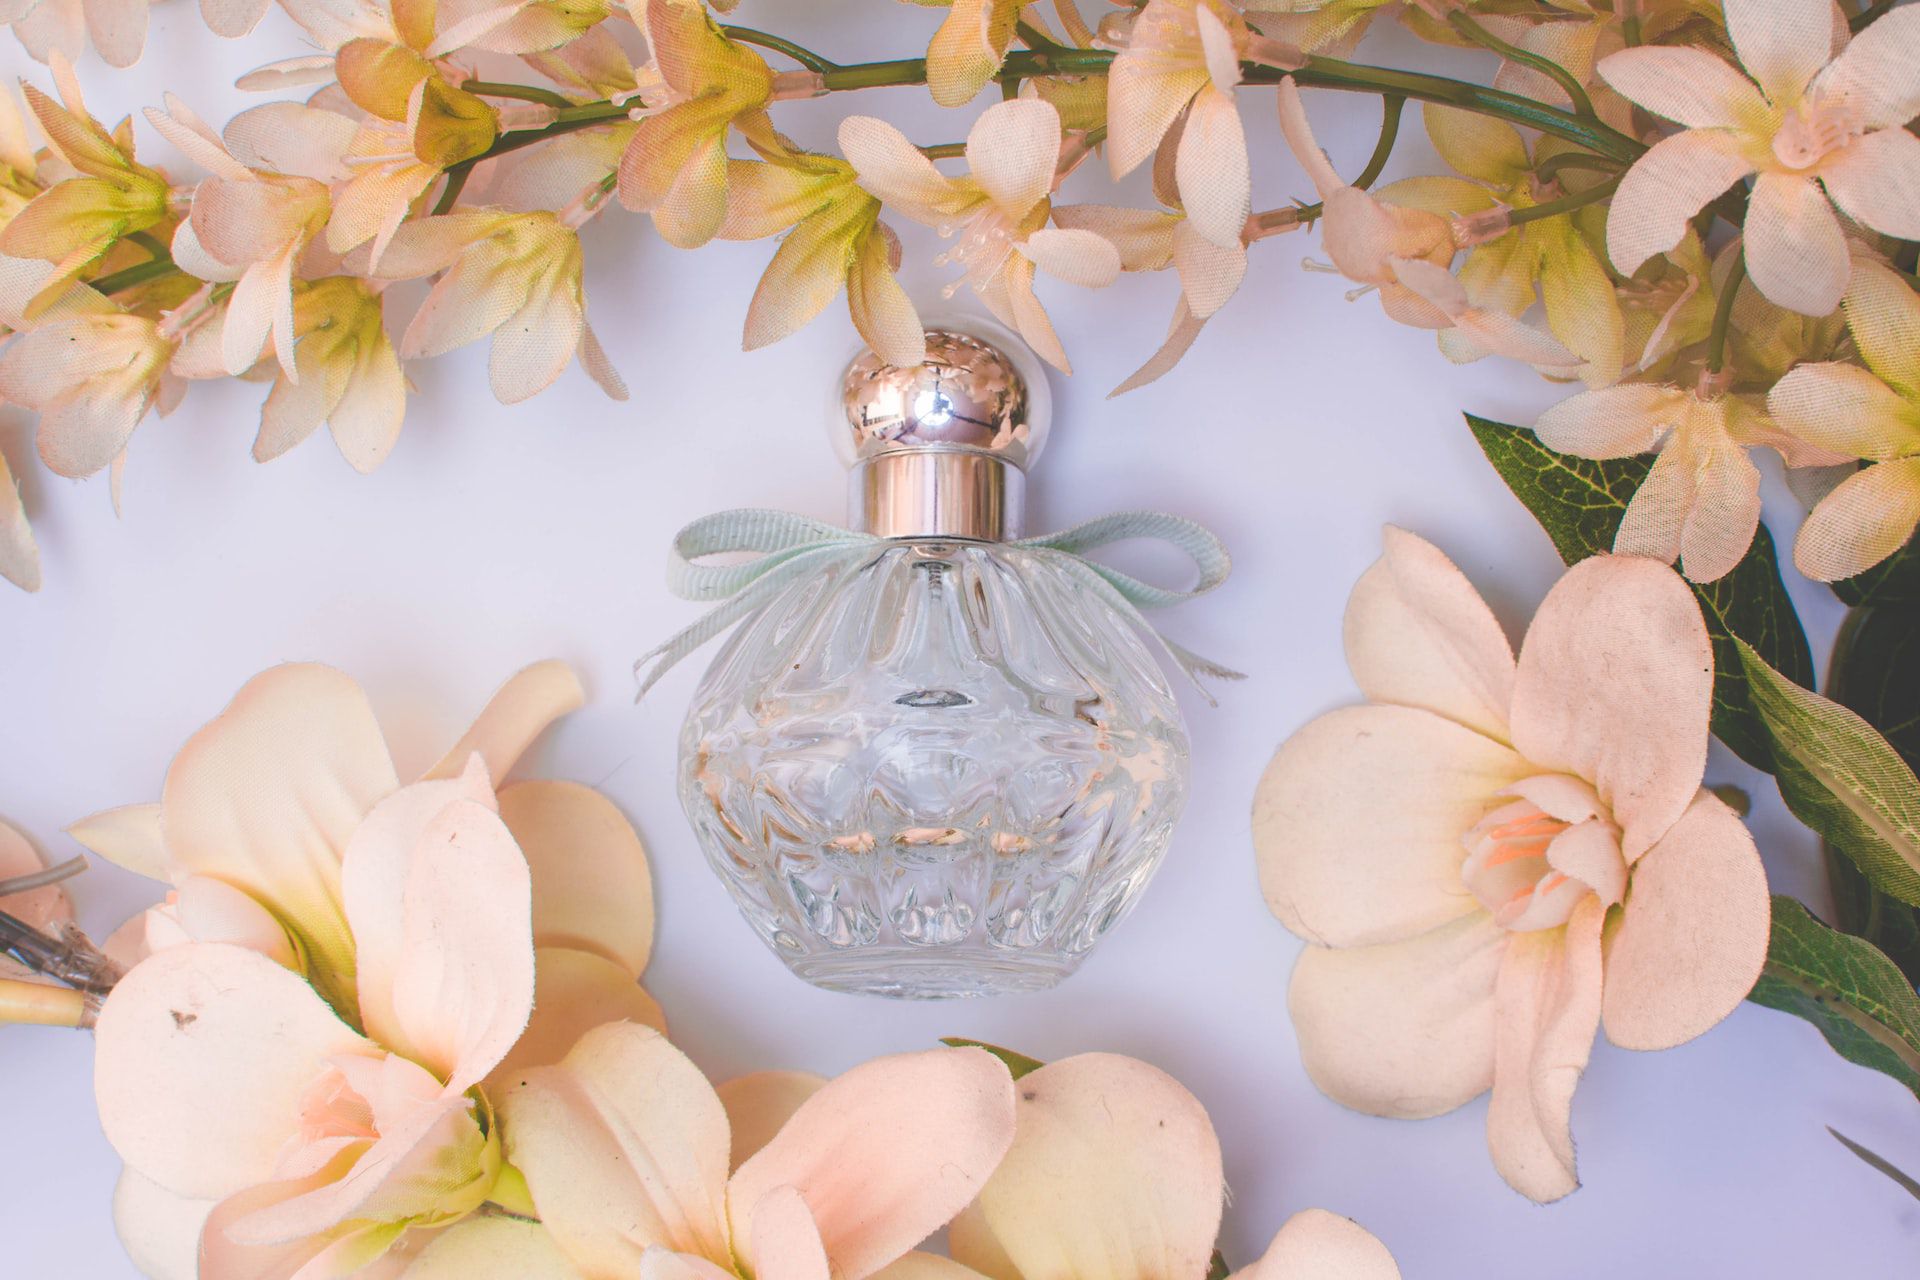 5 perfumes da Avon que VALEM A PENA ter na coleção – Metro World